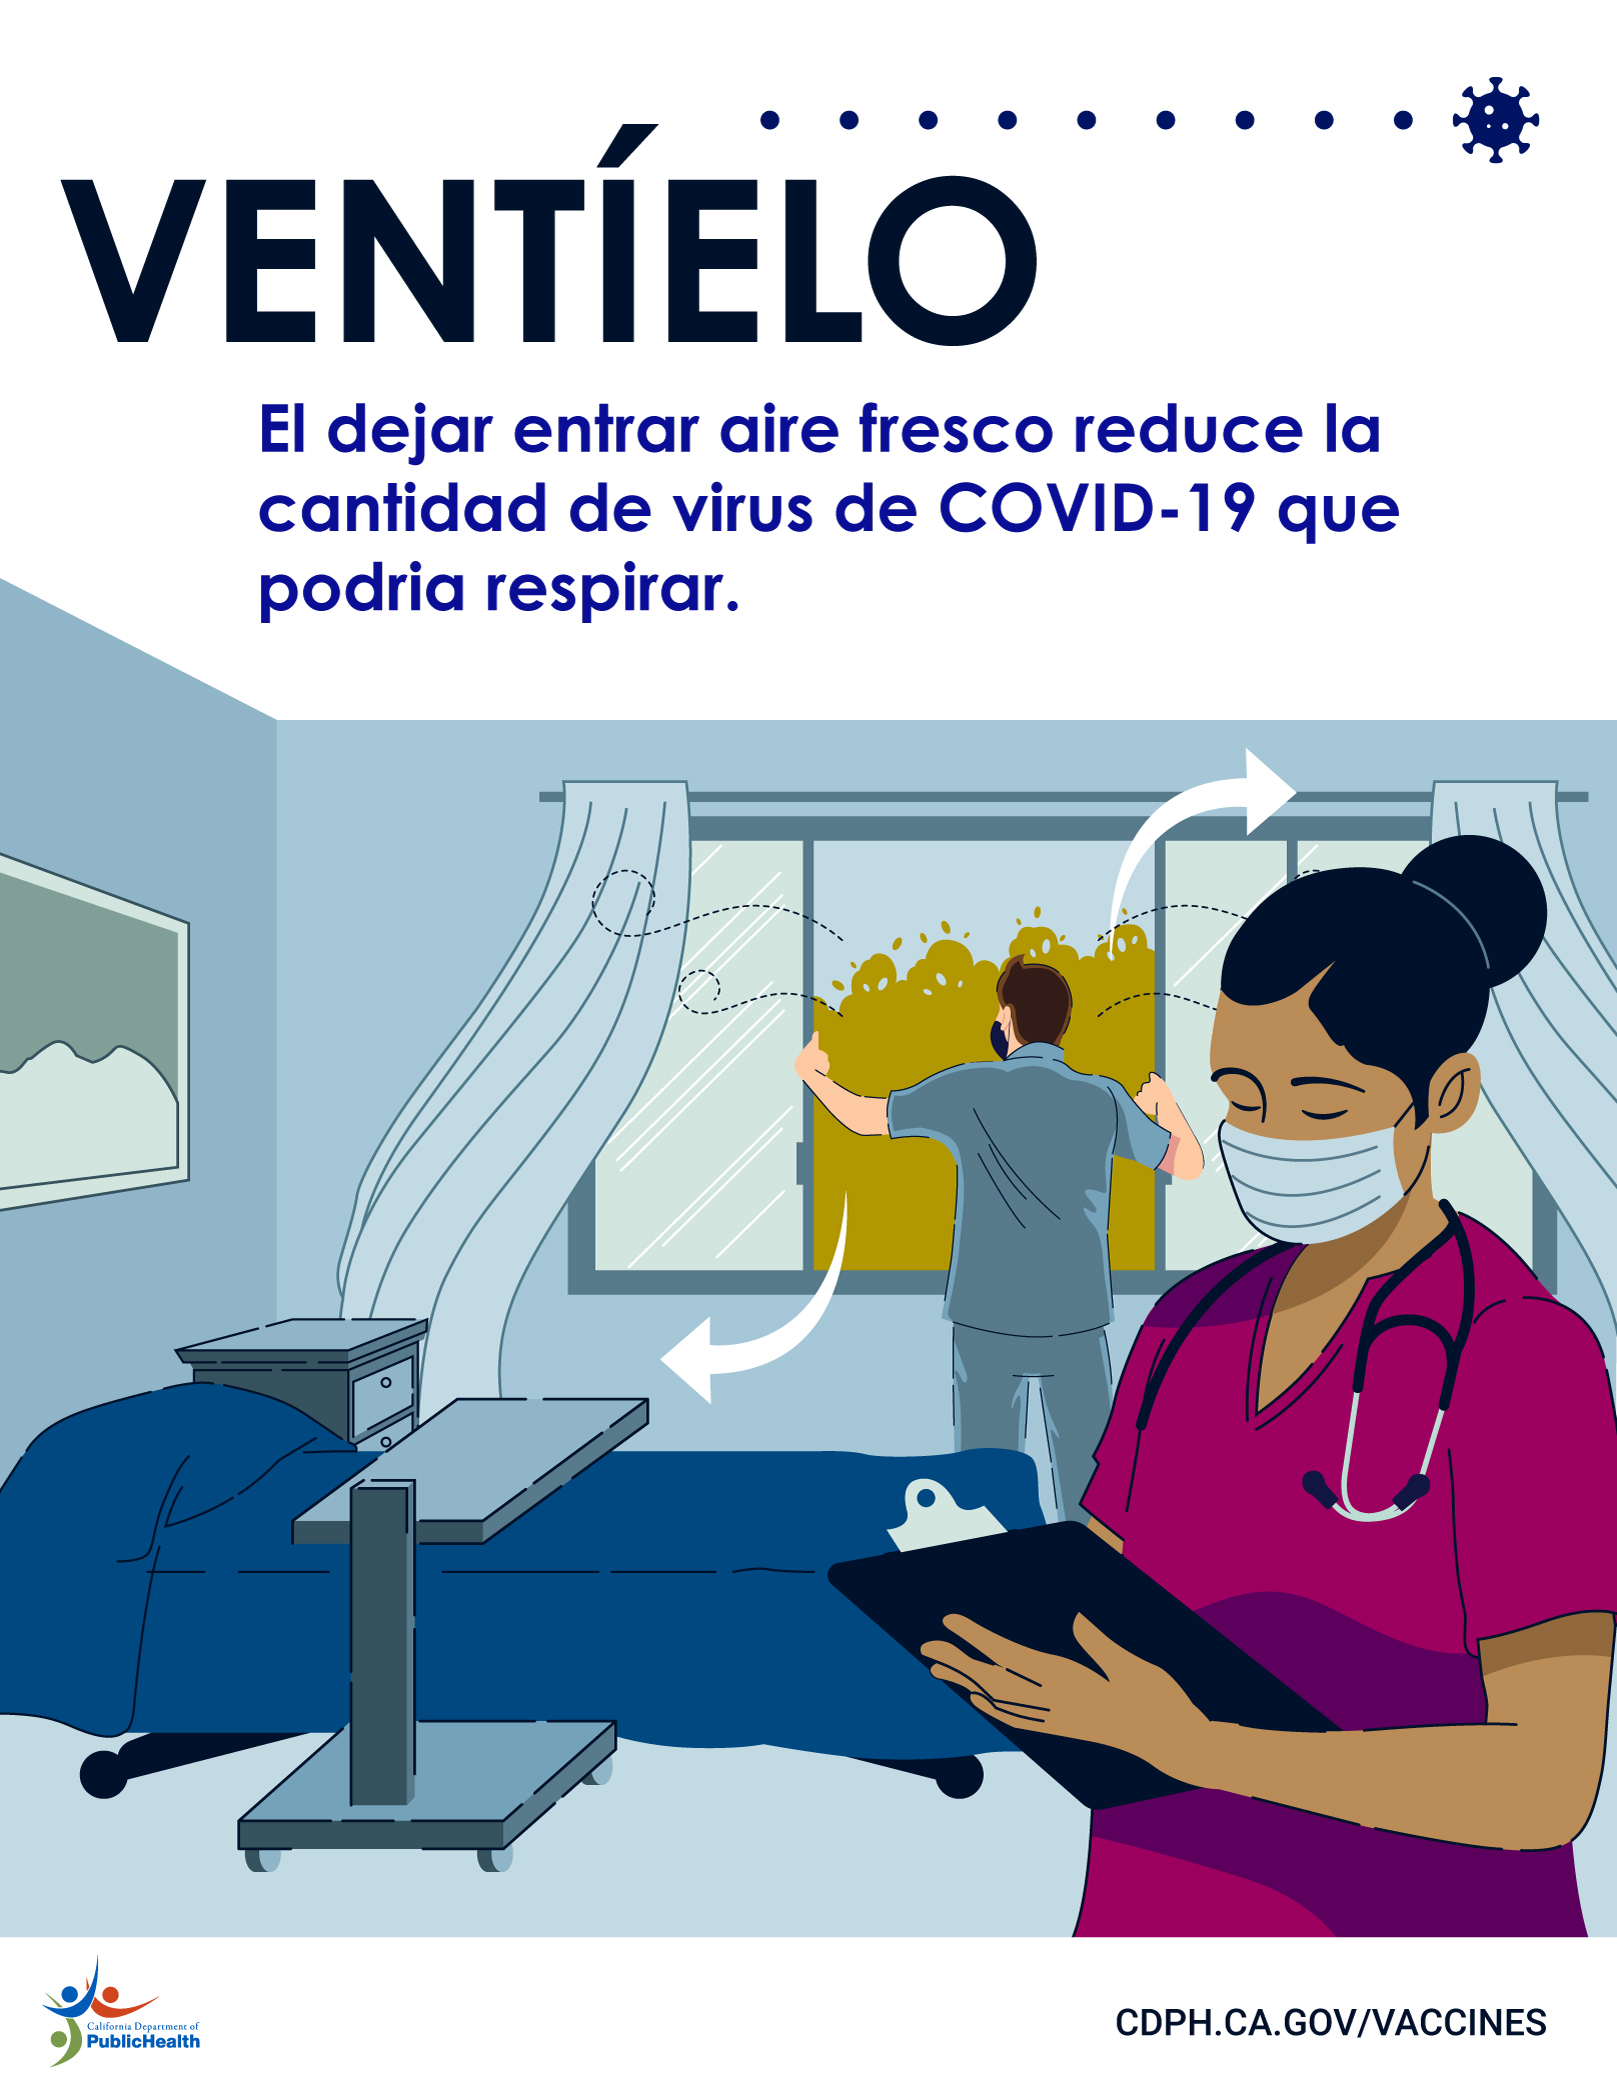 Trabajadores abriendo la ventana en un centro de enfermería especializada. Texto: Ventielo: el dejar entrar aire fresco reduce la cantidad de virus COVID-19